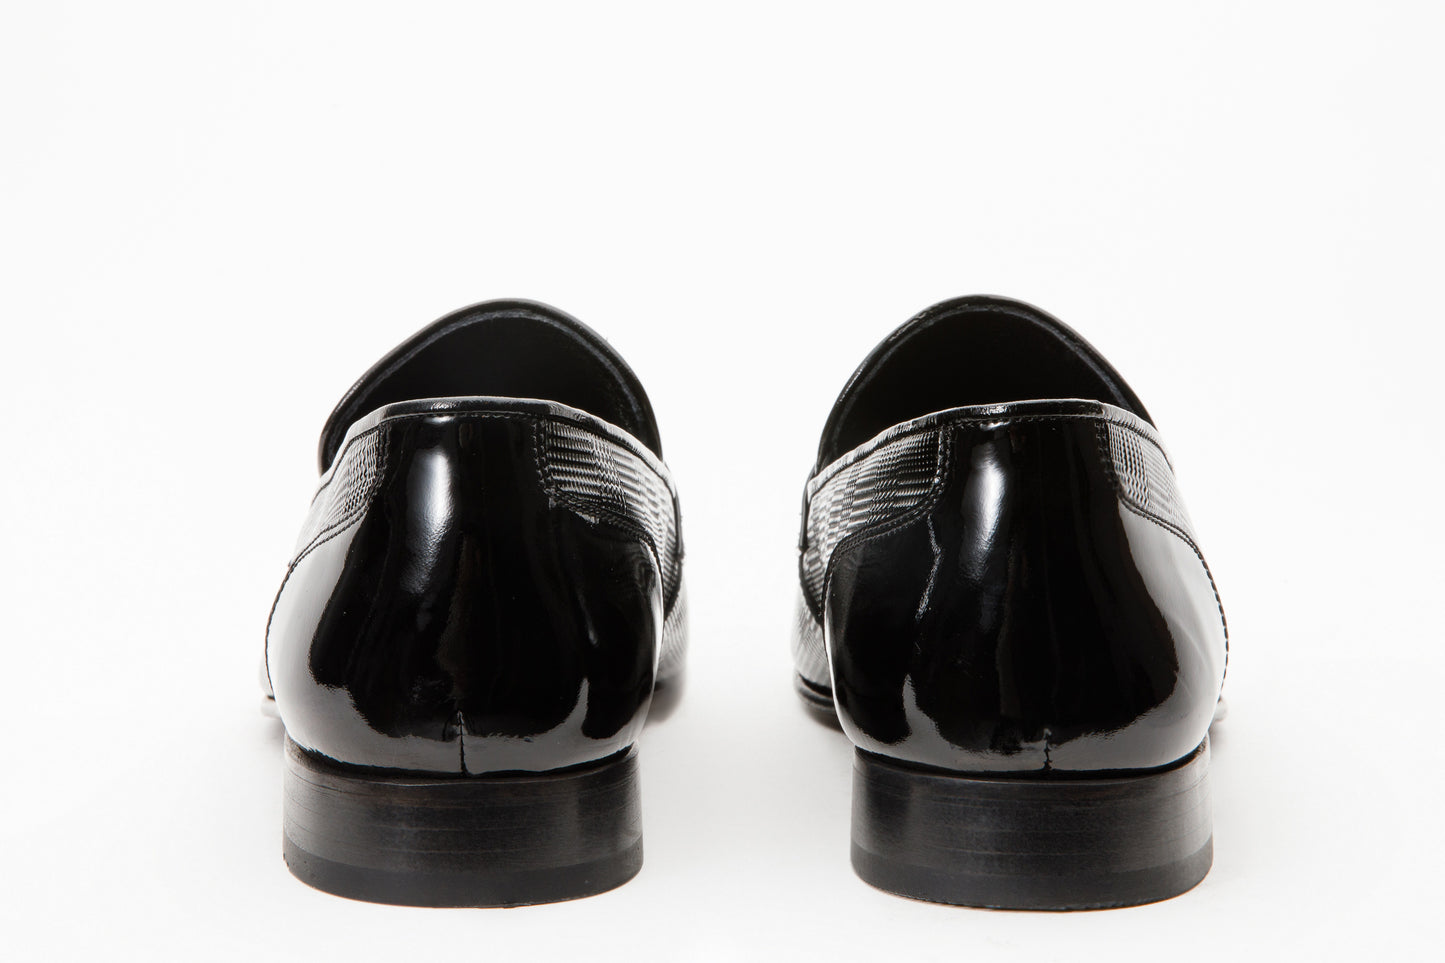 The Warsaw Men Shoe Black Leather Bit Loafer